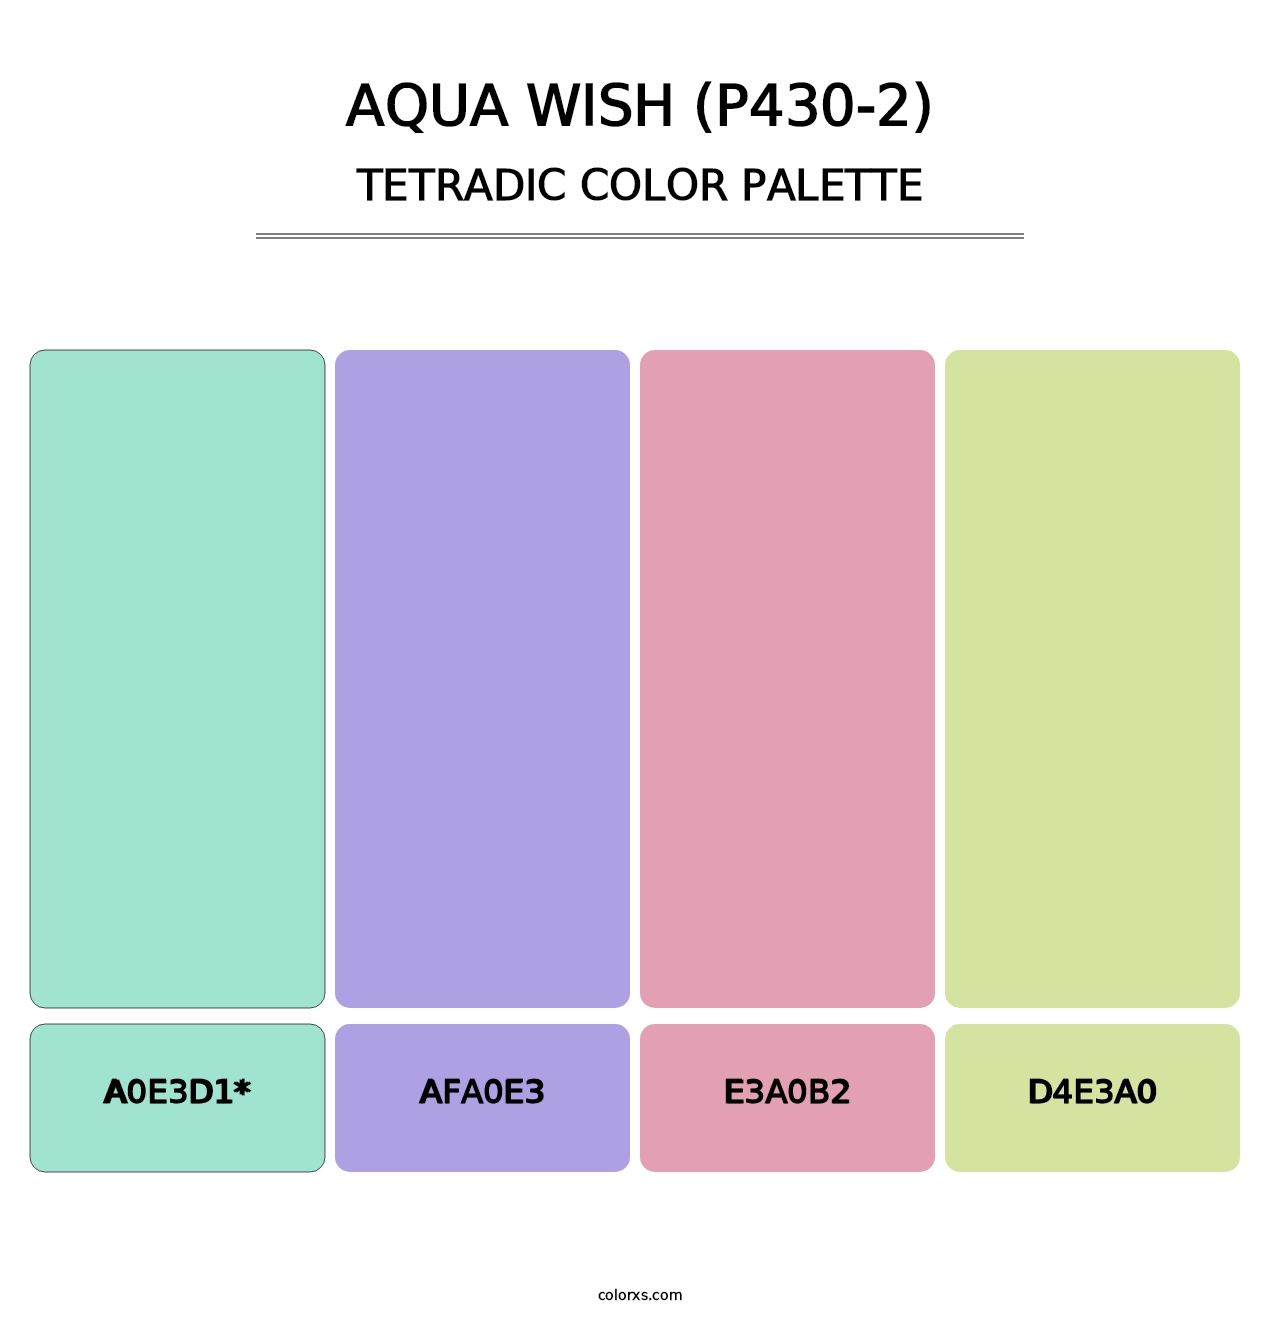 Aqua Wish (P430-2) - Tetradic Color Palette